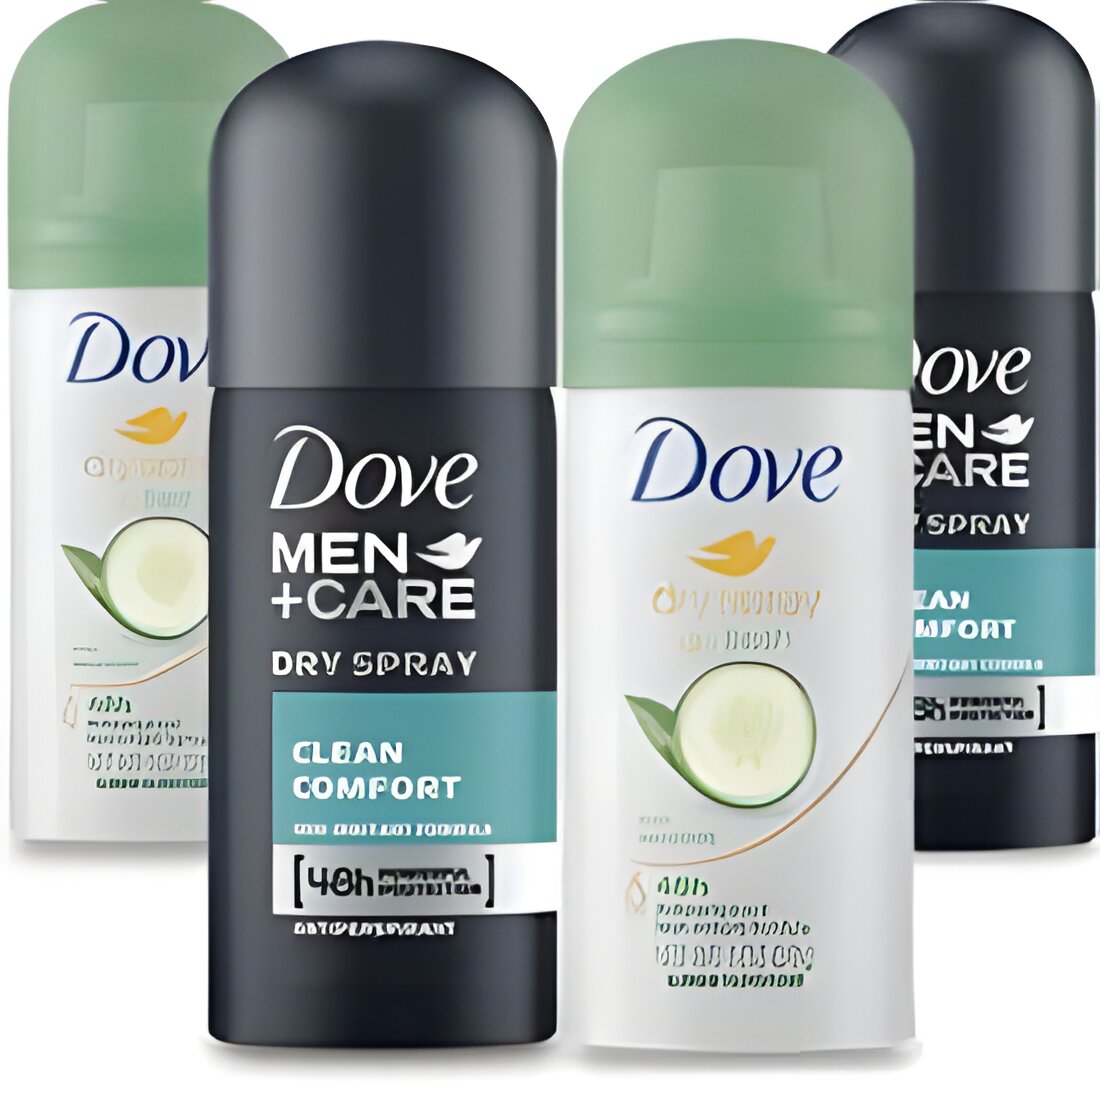 Free Dove Dry Spray Antiperspirant Samples